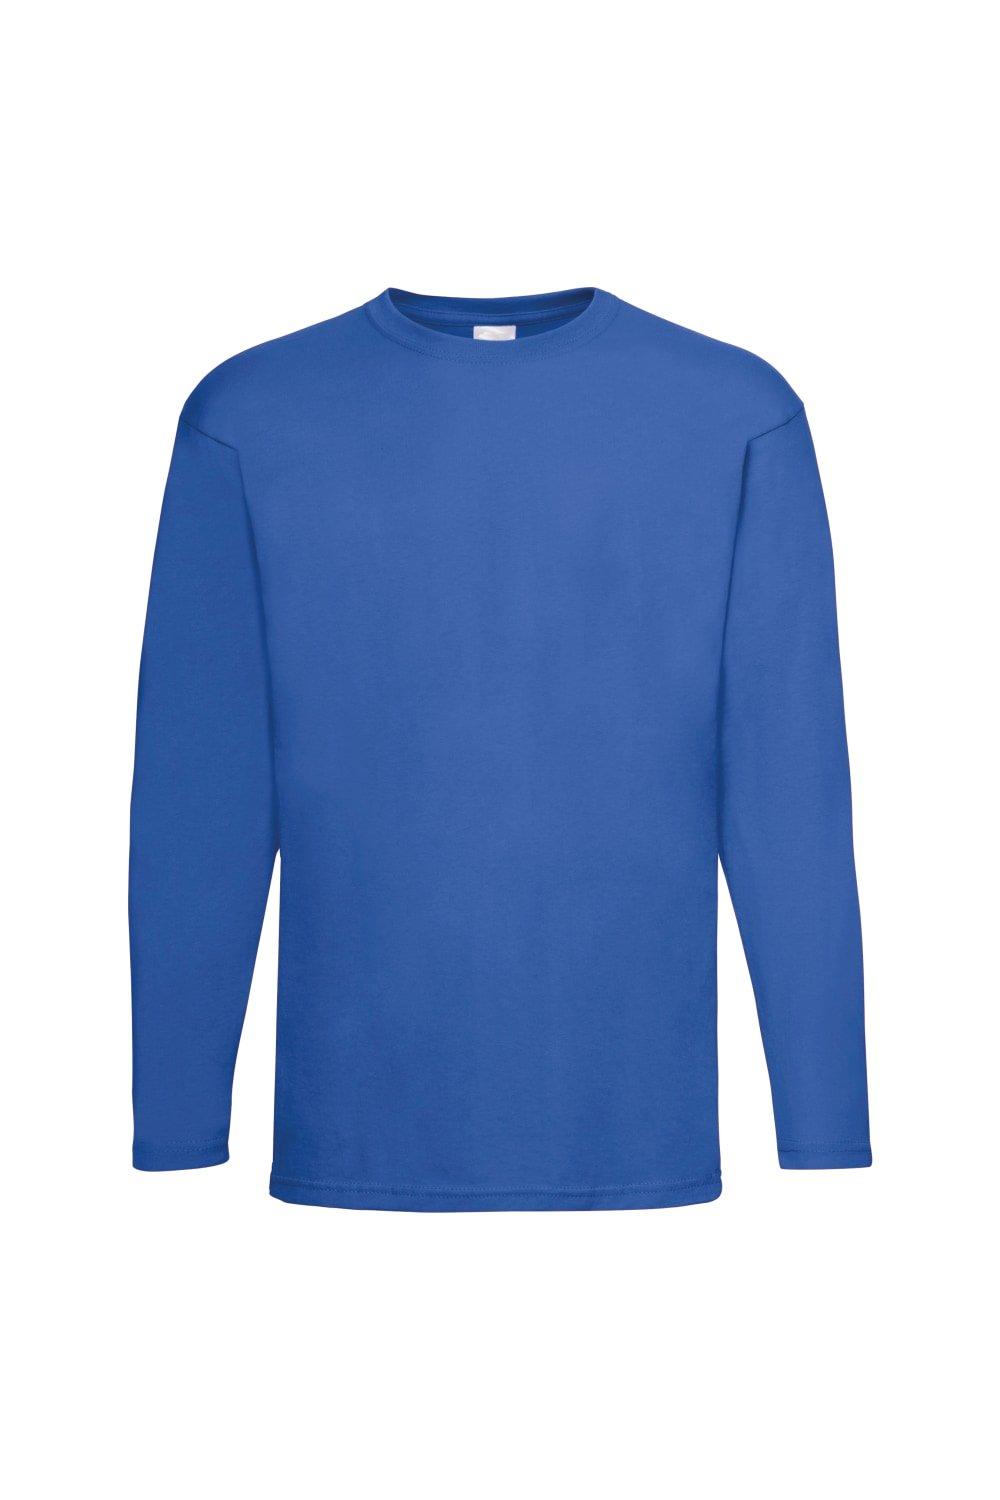 Повседневная футболка Value с длинным рукавом Universal Textiles, синий мужская футболка ретро кассета 2xl серый меланж